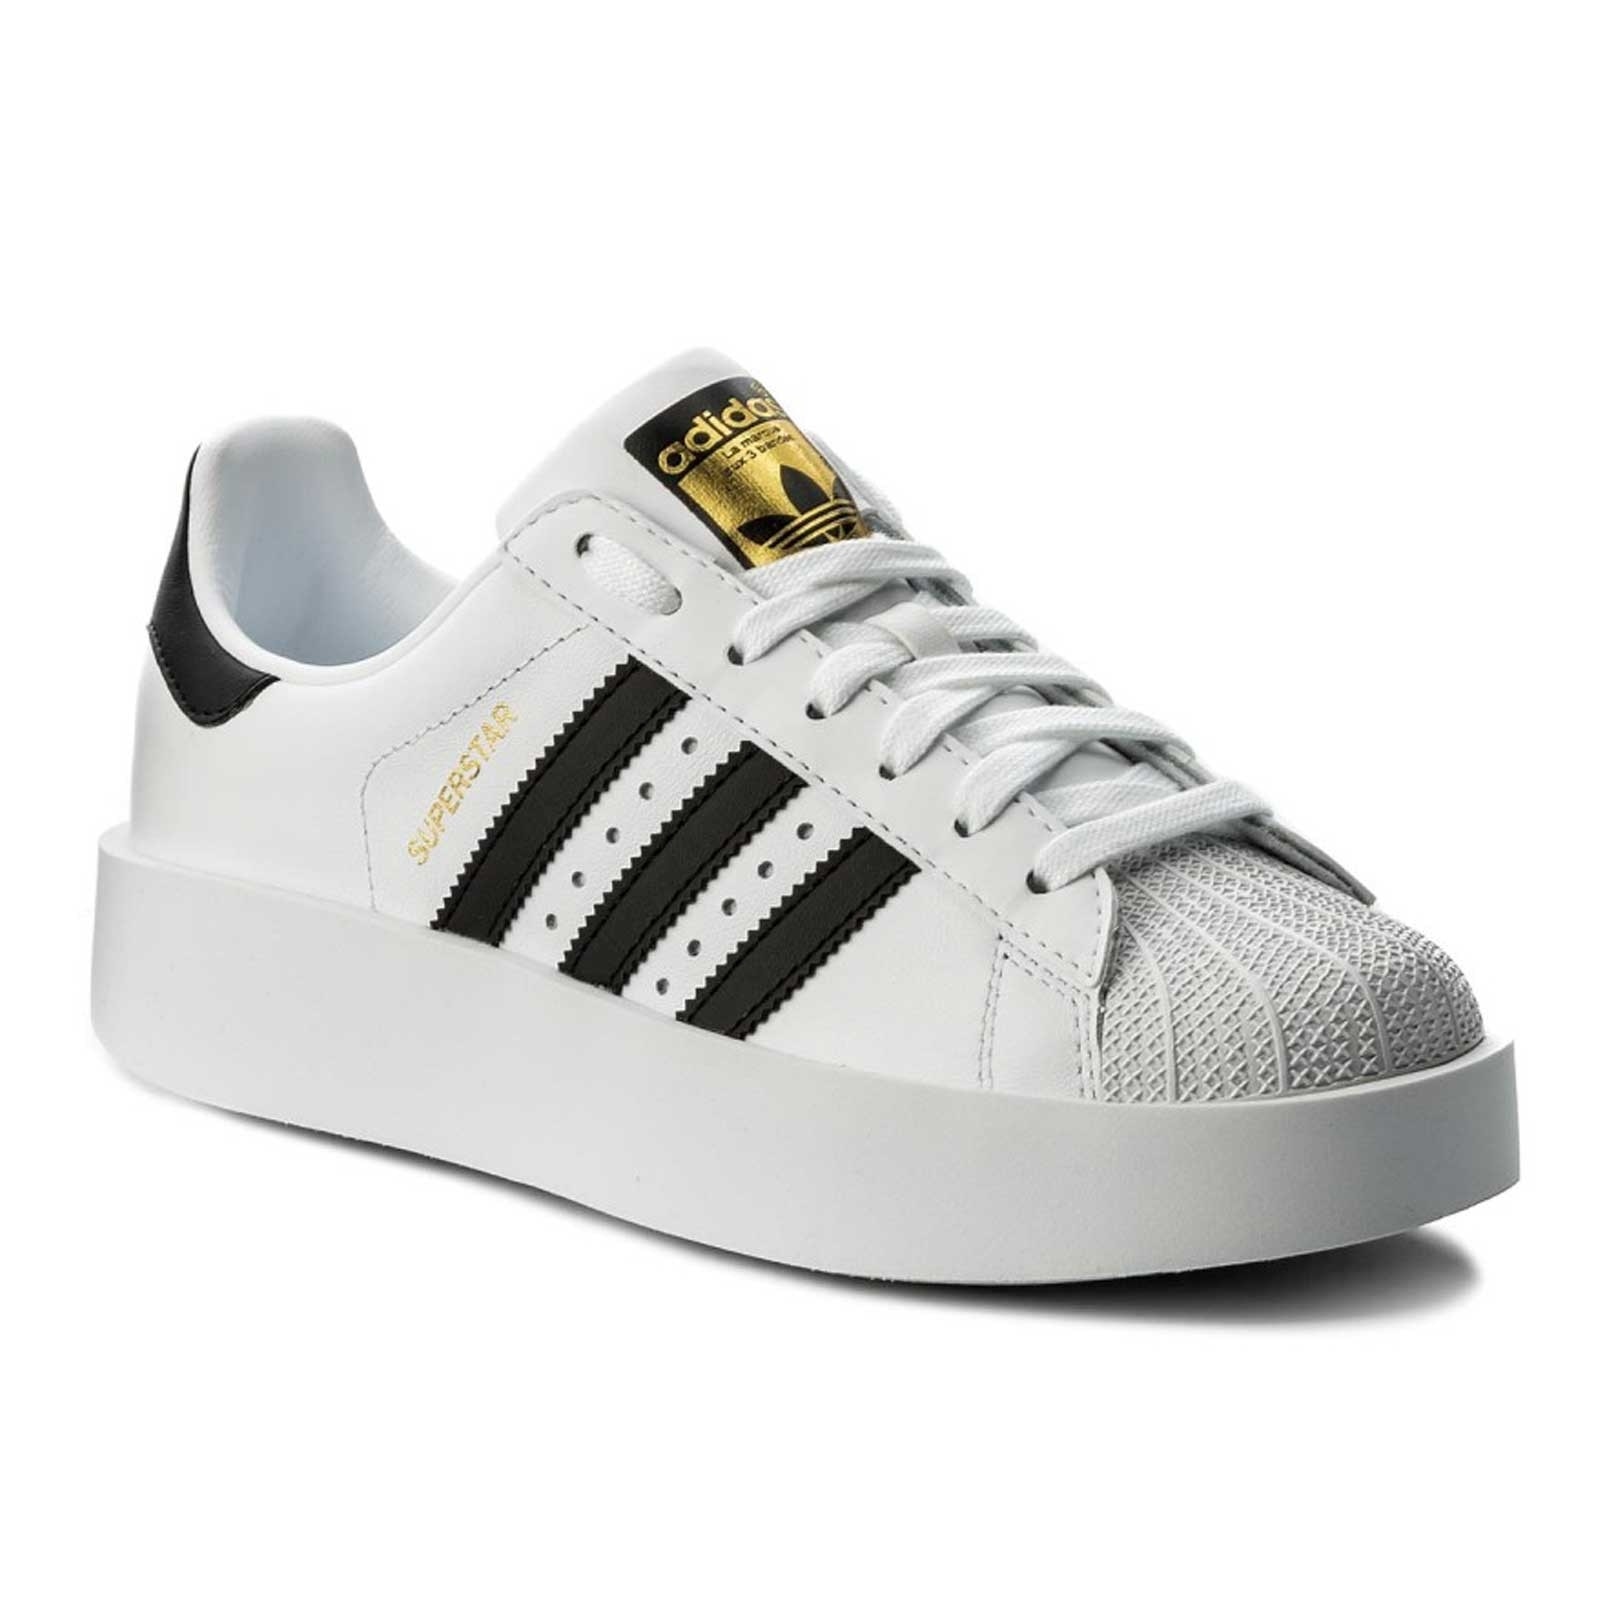 Pantofi sport Adidas Originals SUPERSTAR BOLD alb/negru 37 1/3 eMAG.ro